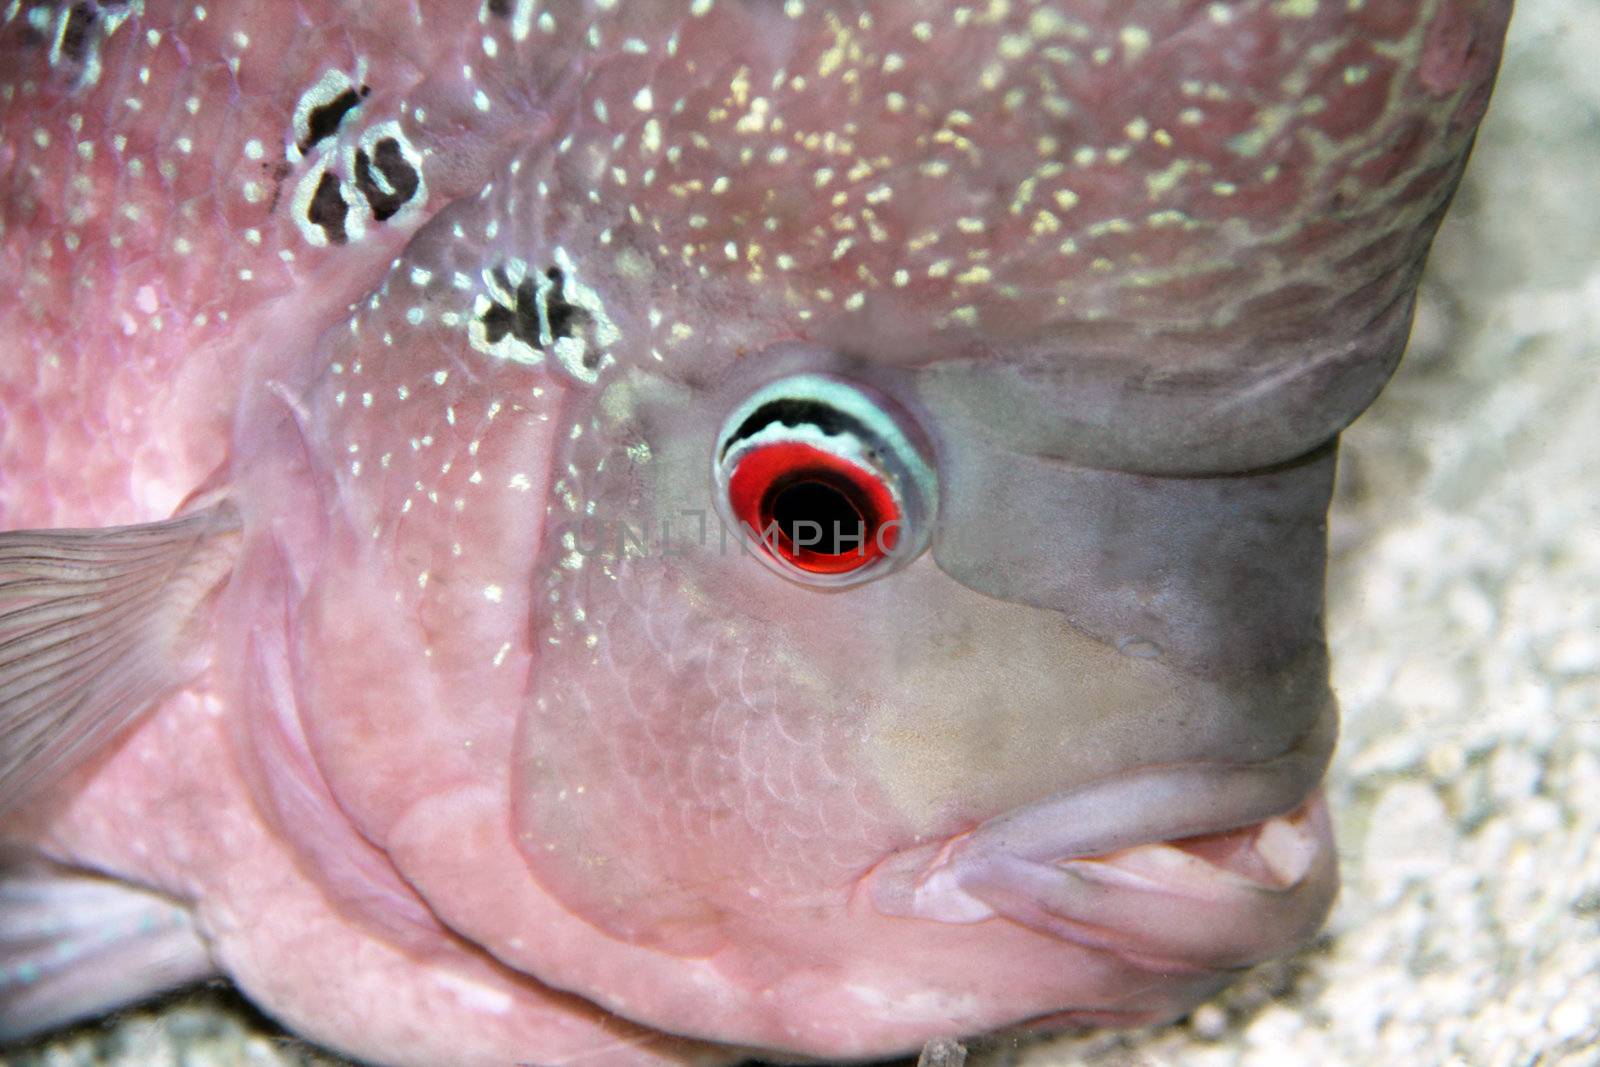 Aquarium Redhead cichlid (Geophagus steindachneri) closeup